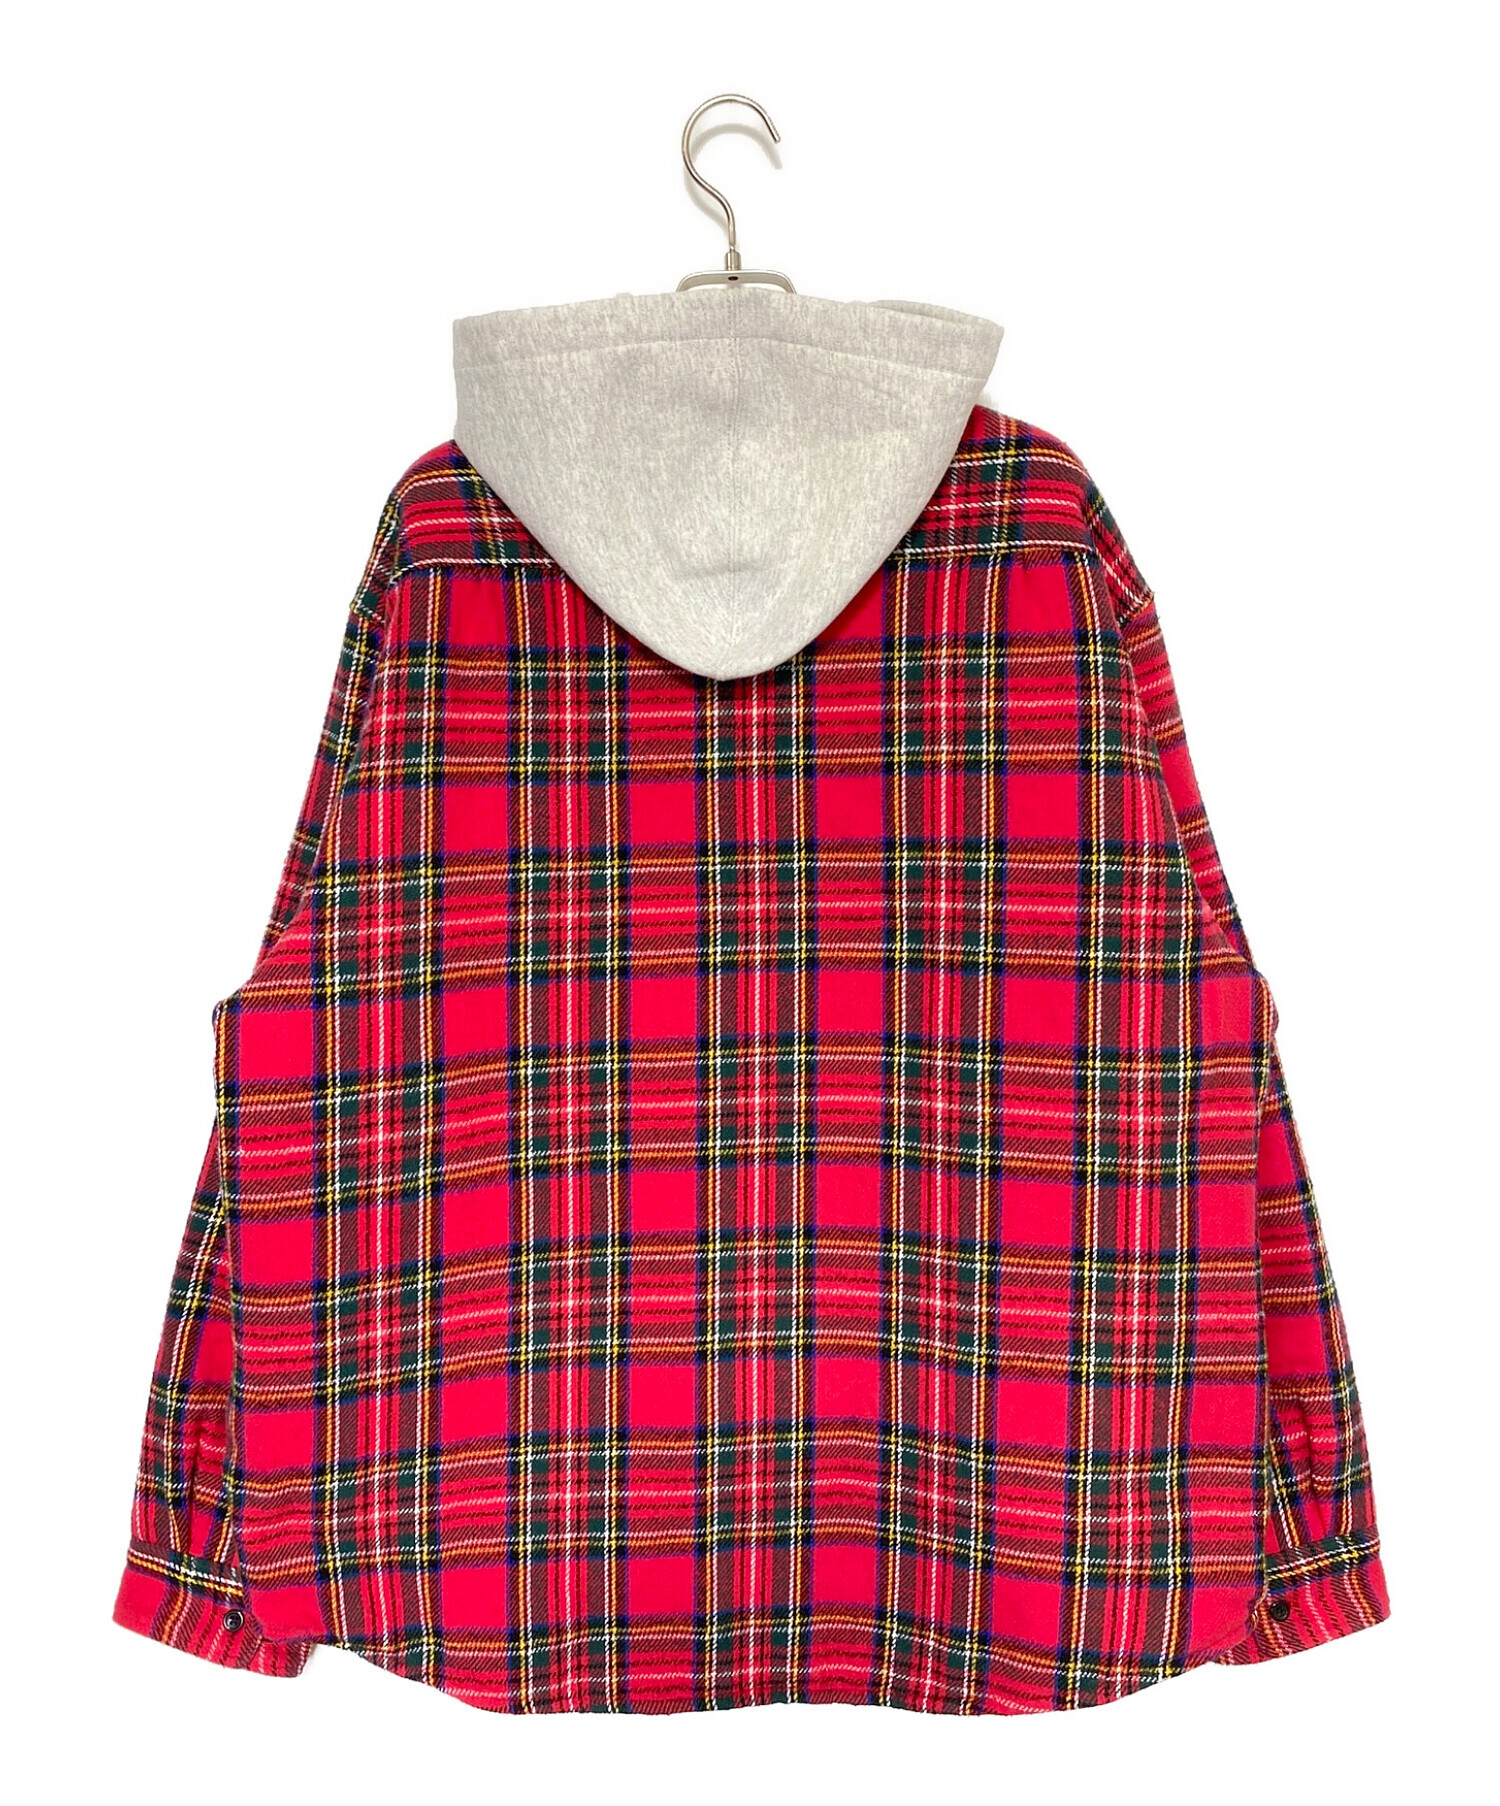 8,299円supreme Tartan Flannel Hooded Shirt